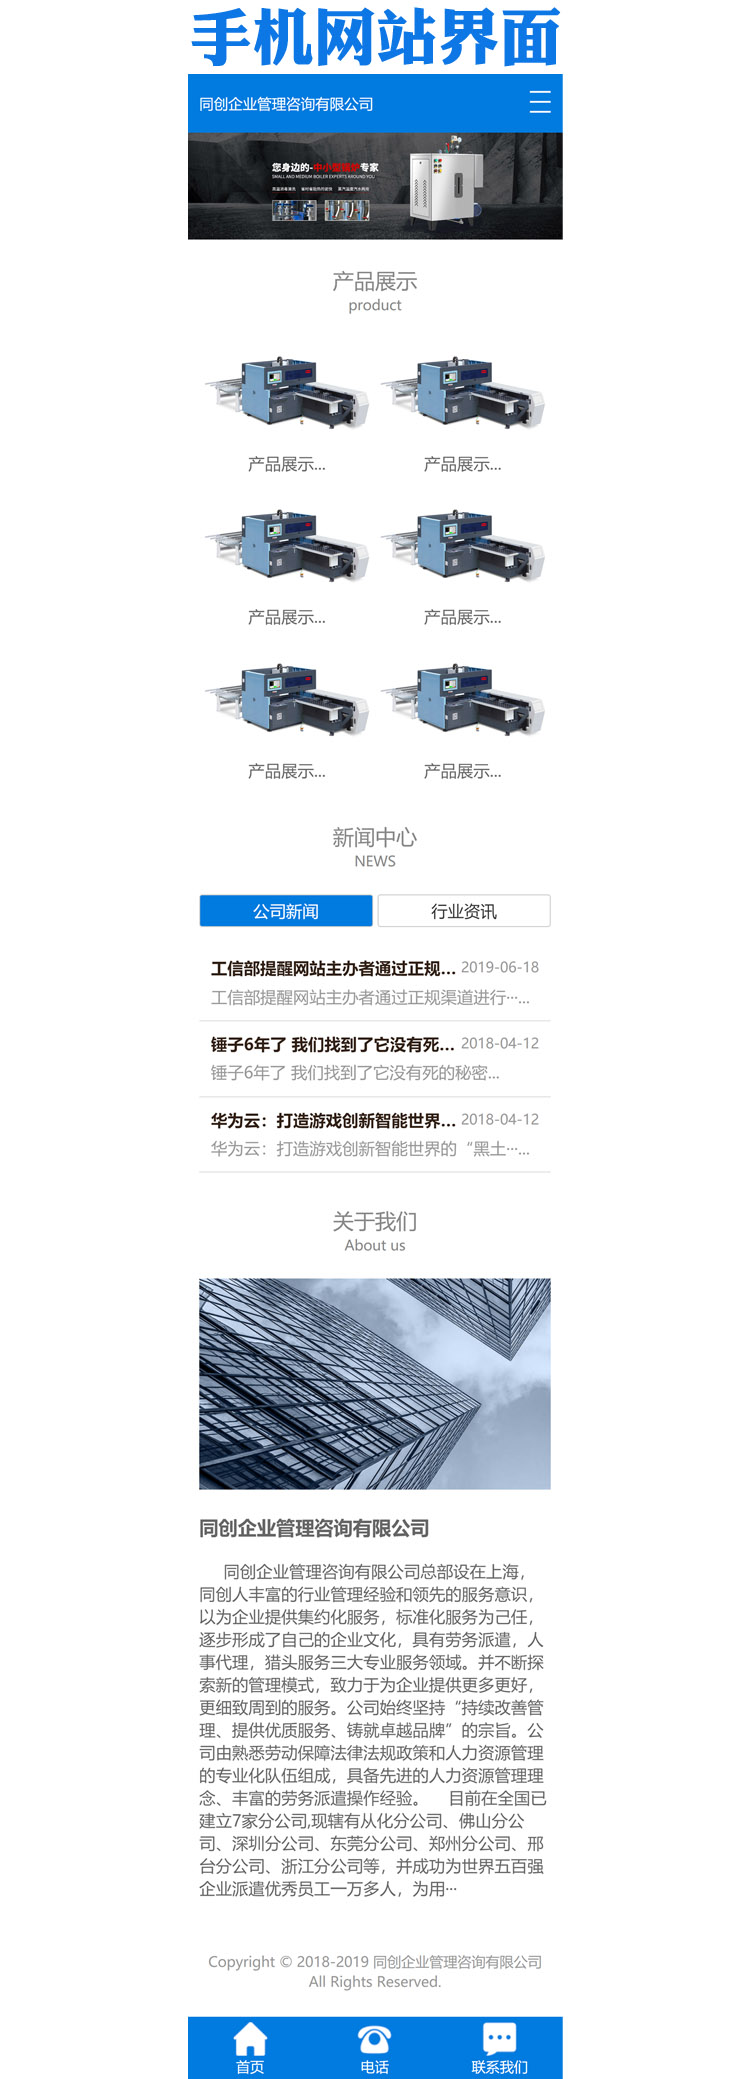 五金机械设备公司网站源码模板程序-TC064-3